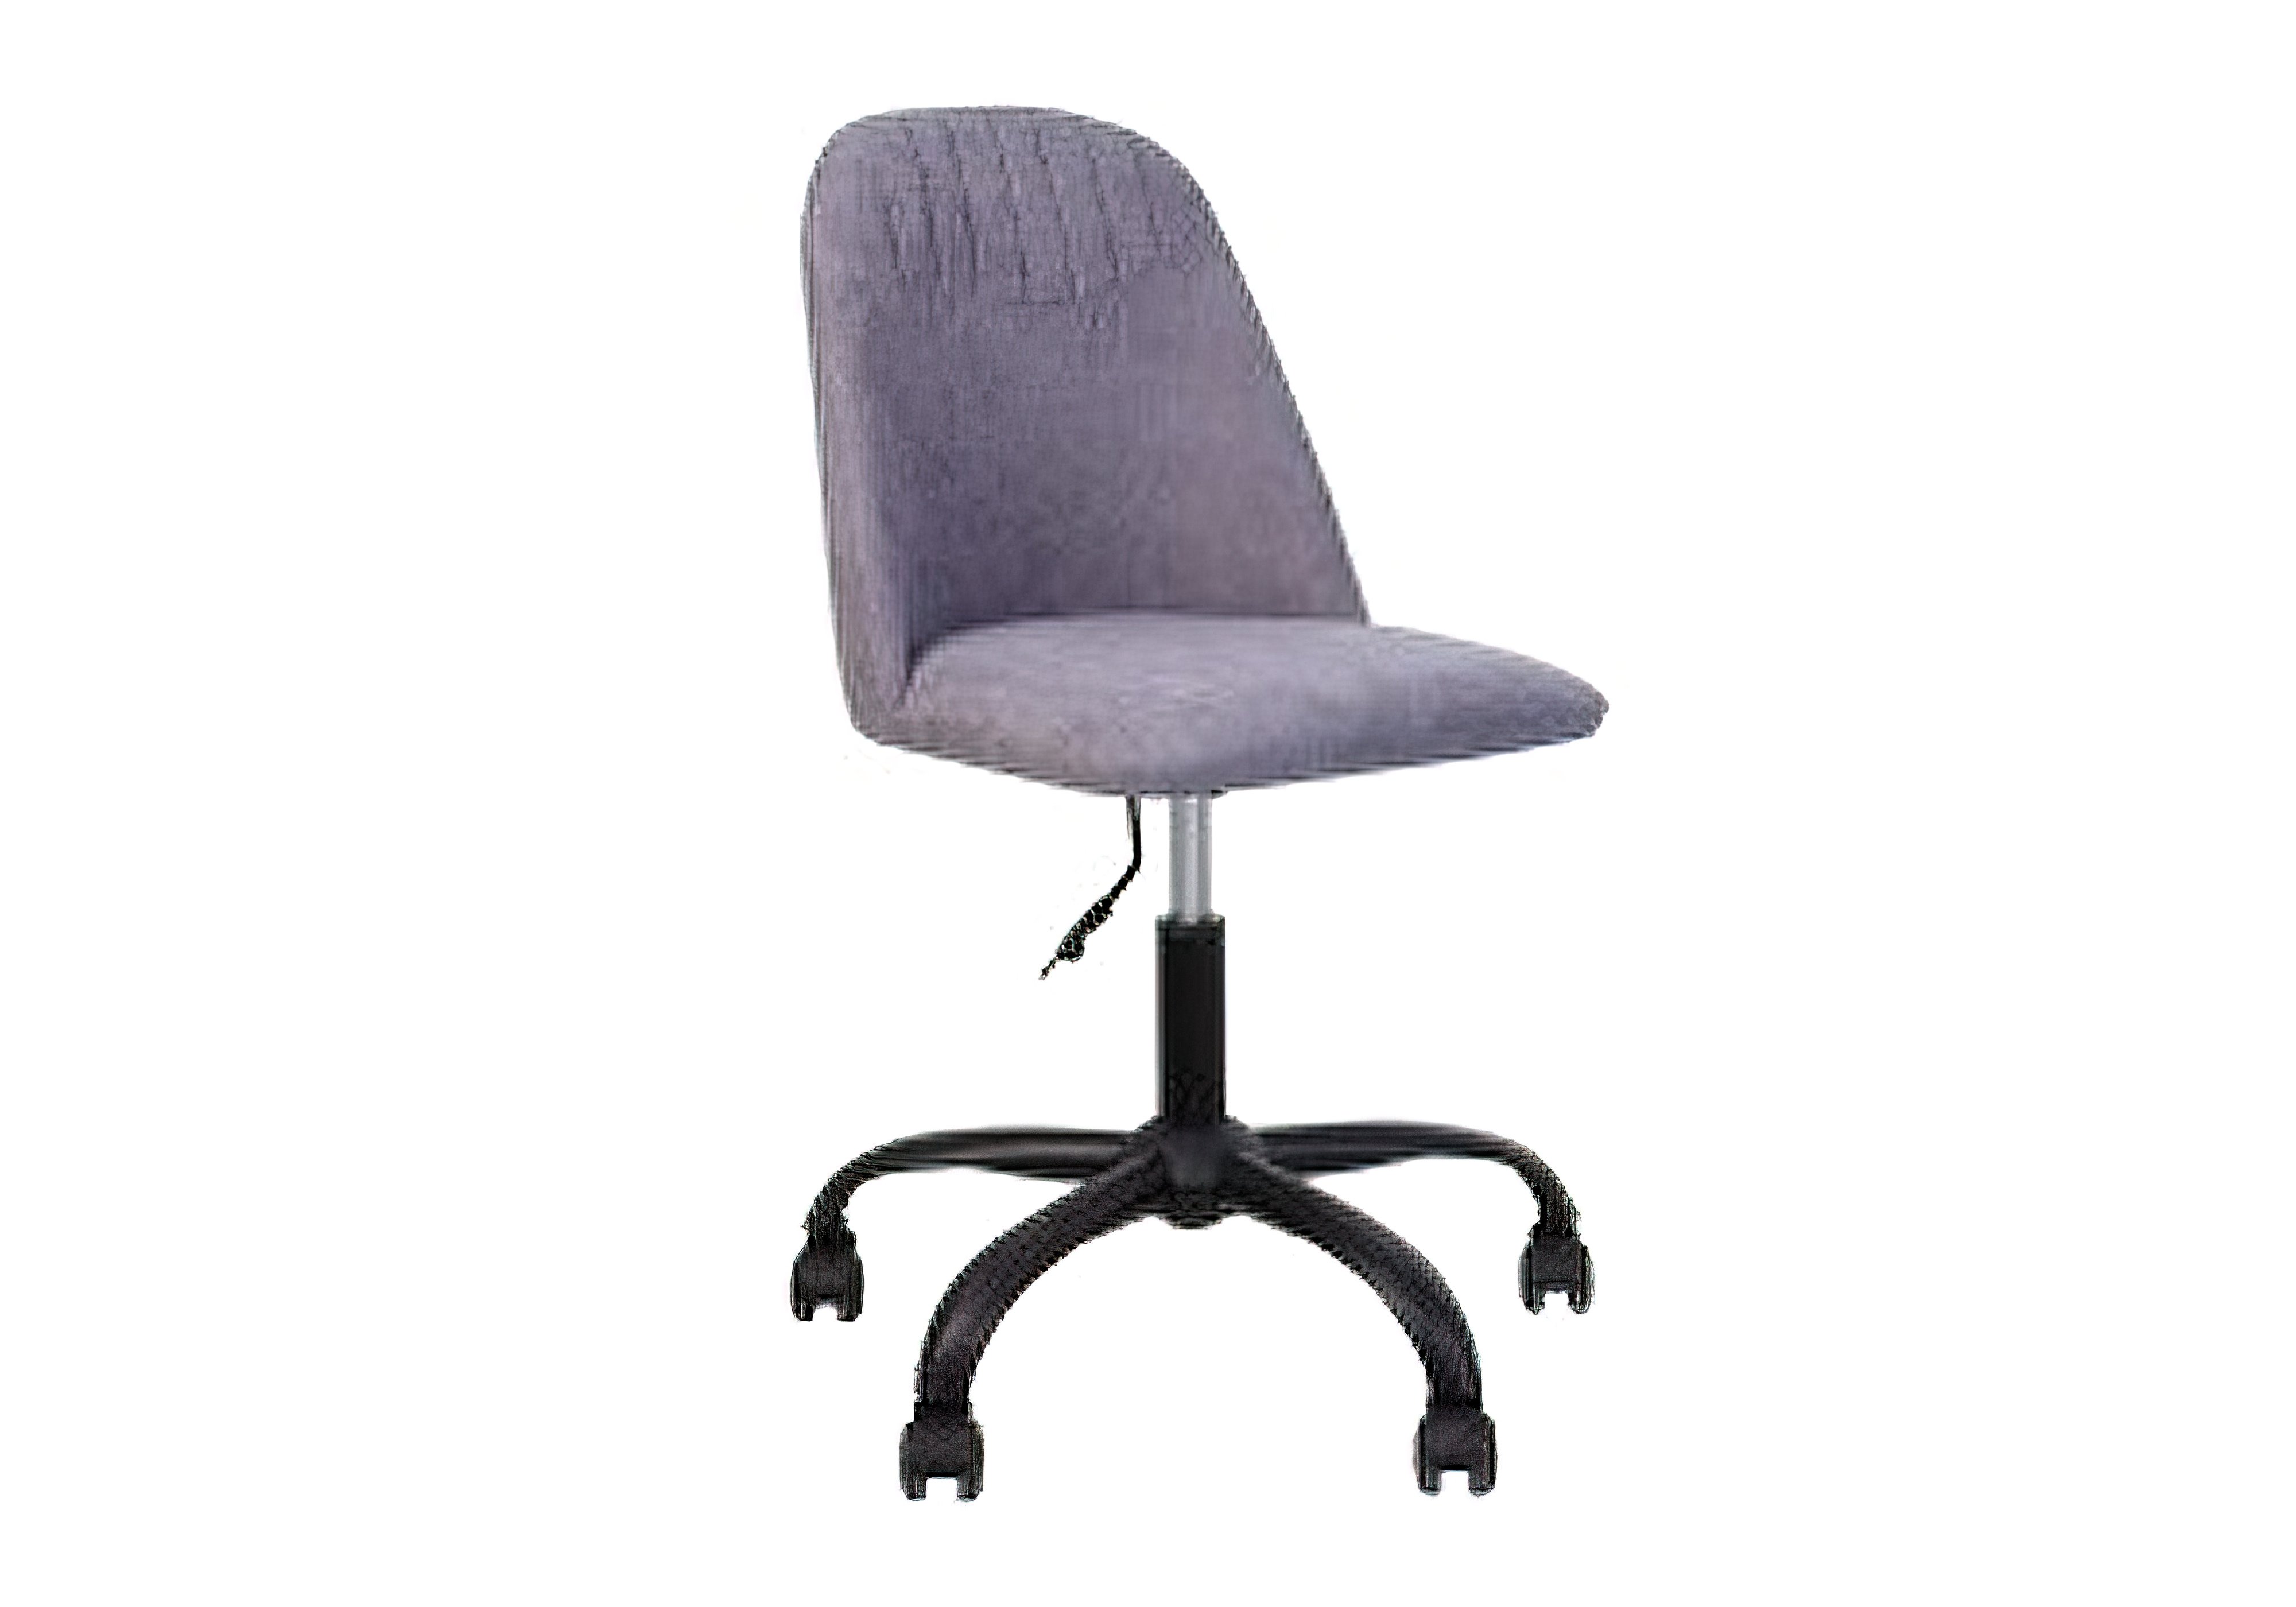 Кресло MILANA GTS MB68 Новый стиль, Высота 116см, Ширина сиденья 45см